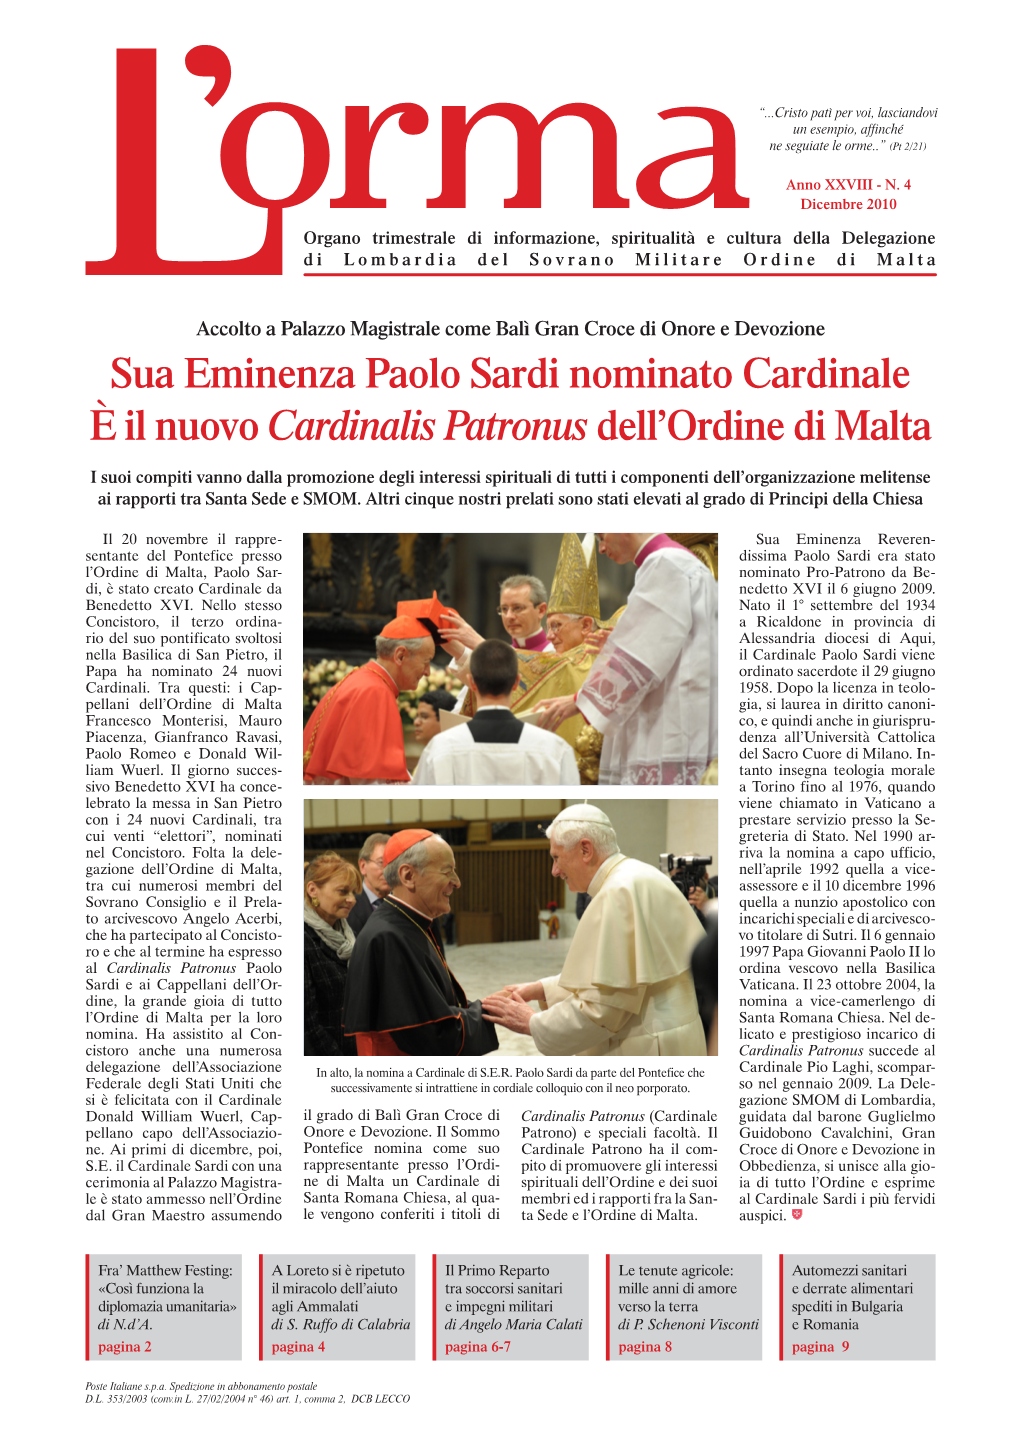 Sua Eminenza Paolo Sardi Nominato Cardinale È Il Nuovo Cardinalis Patronus Dell’Ordine Di Malta